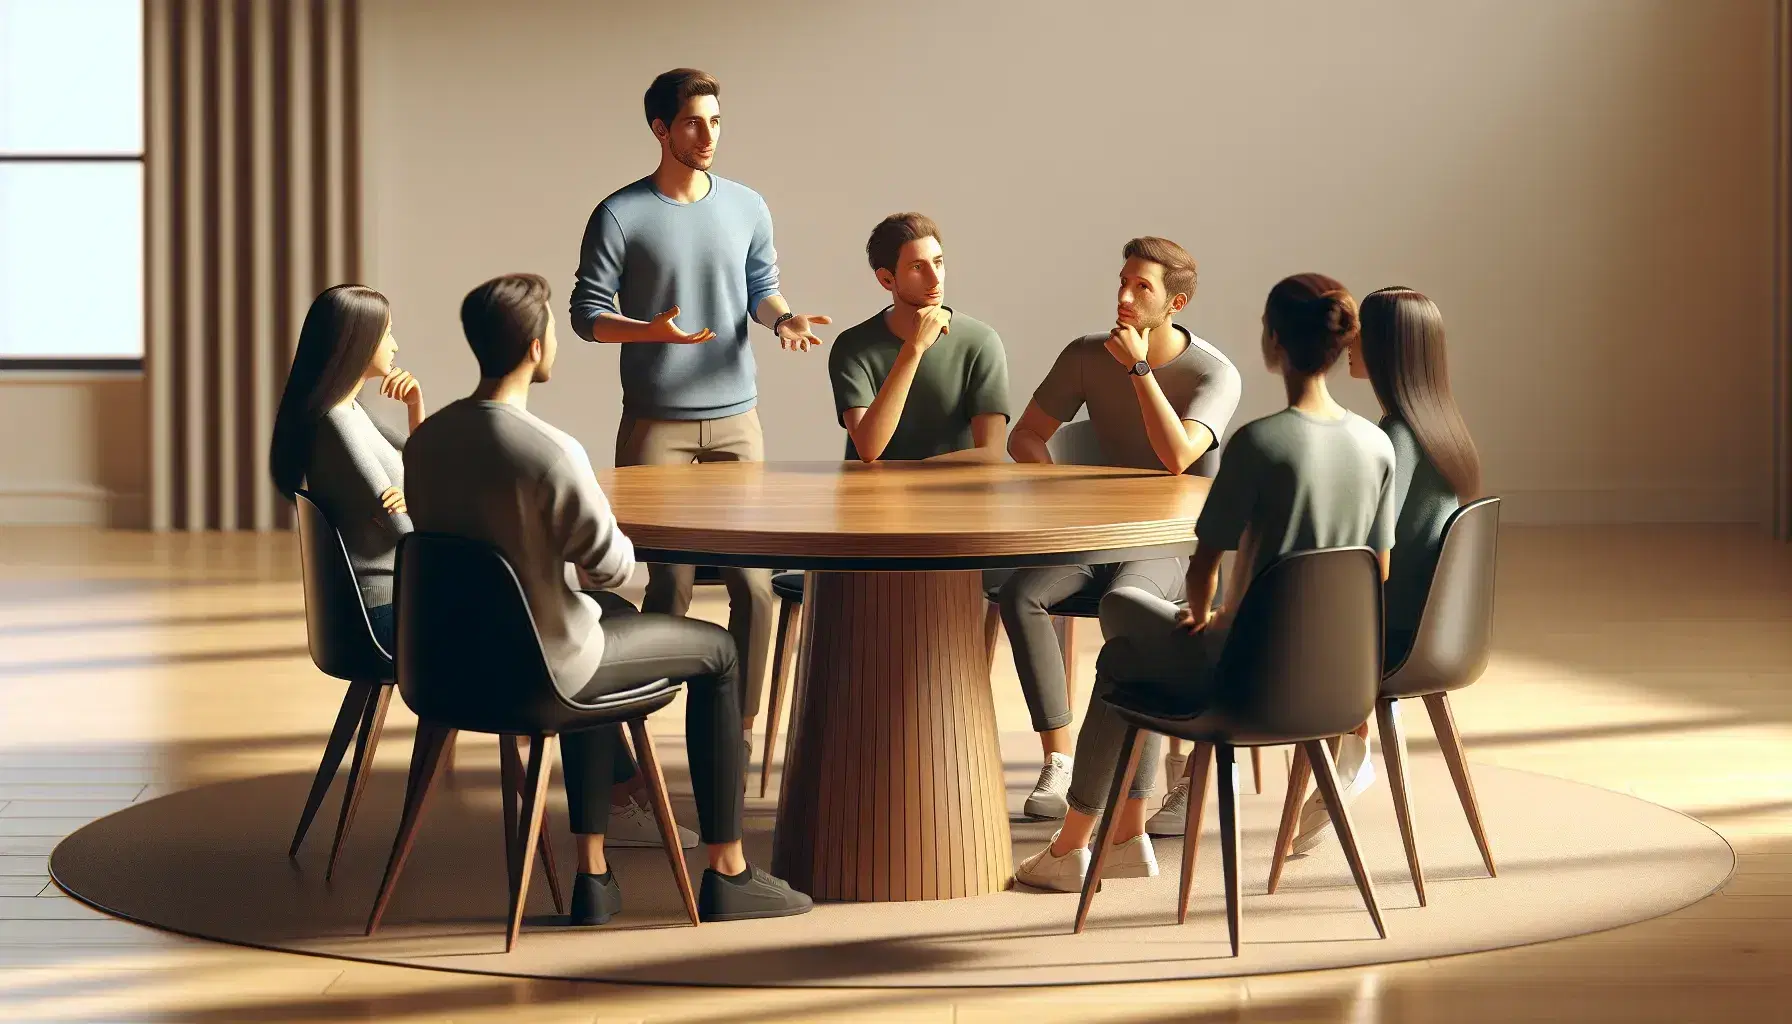 Grupo de cinco personas en reunión de trabajo alrededor de una mesa redonda de madera, con un hombre de pie gestualizando y los demás atentos.